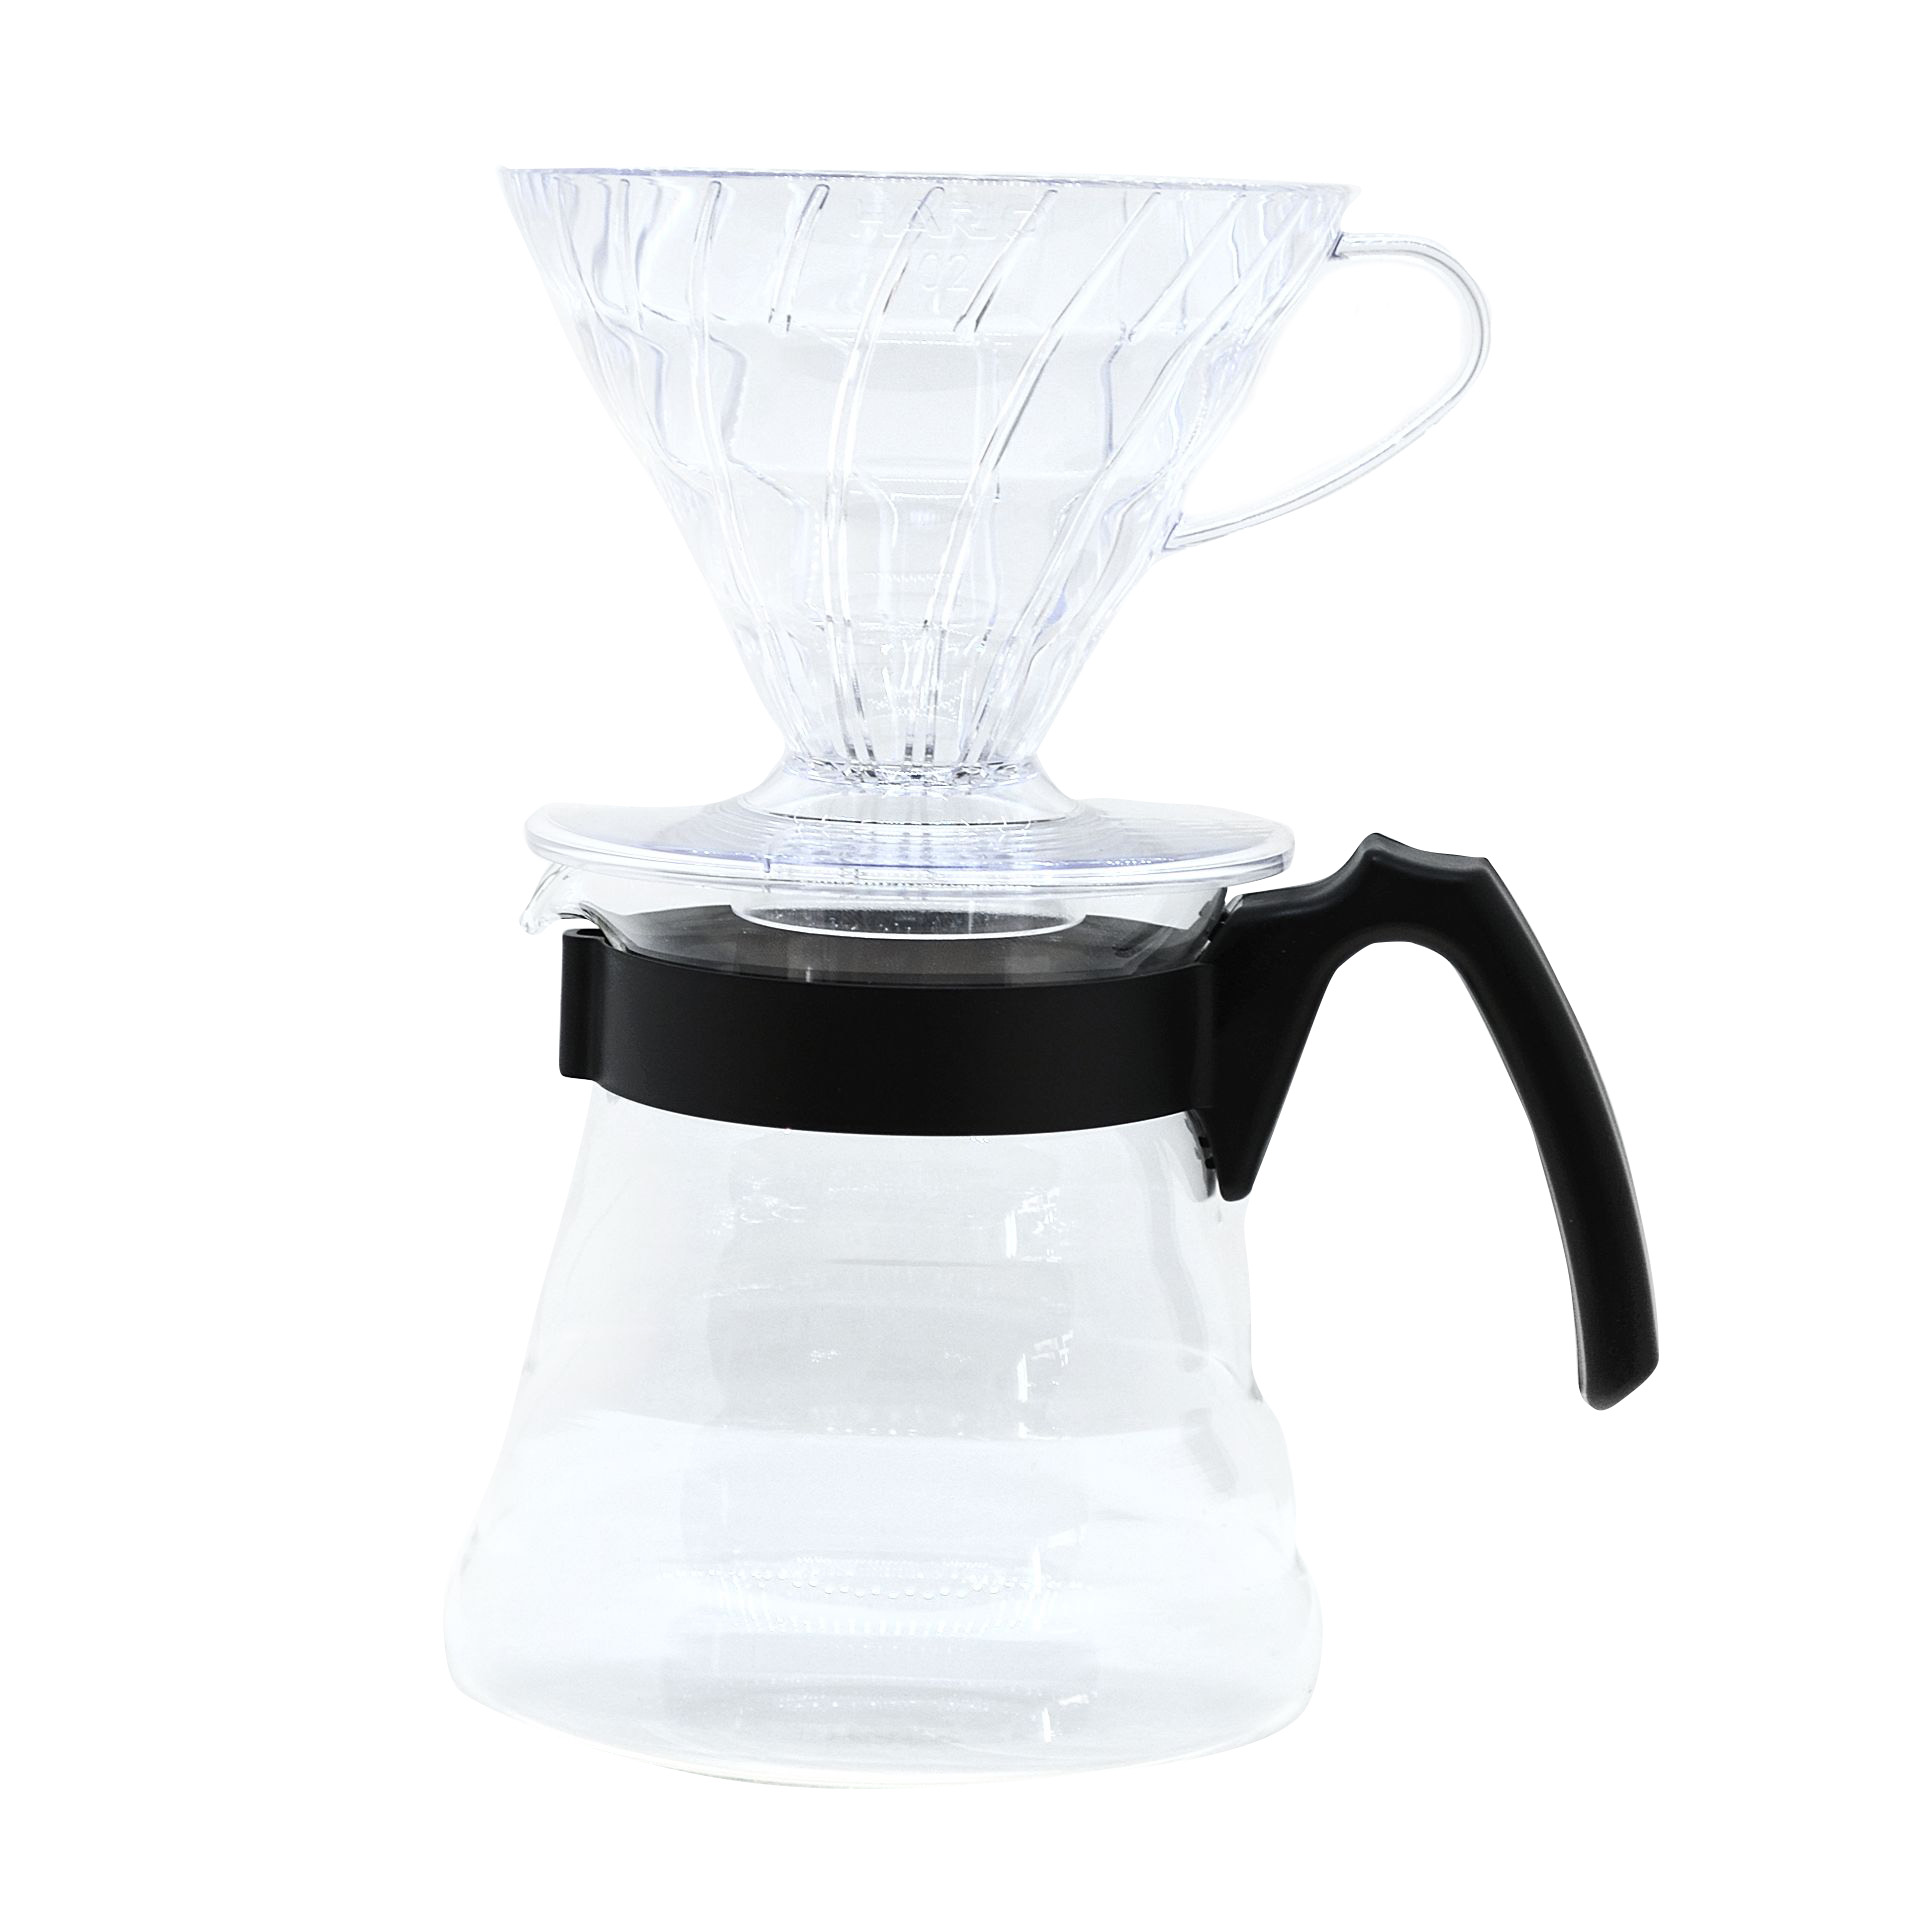 Hario V60 Craft Coffee Maker - Cafecito